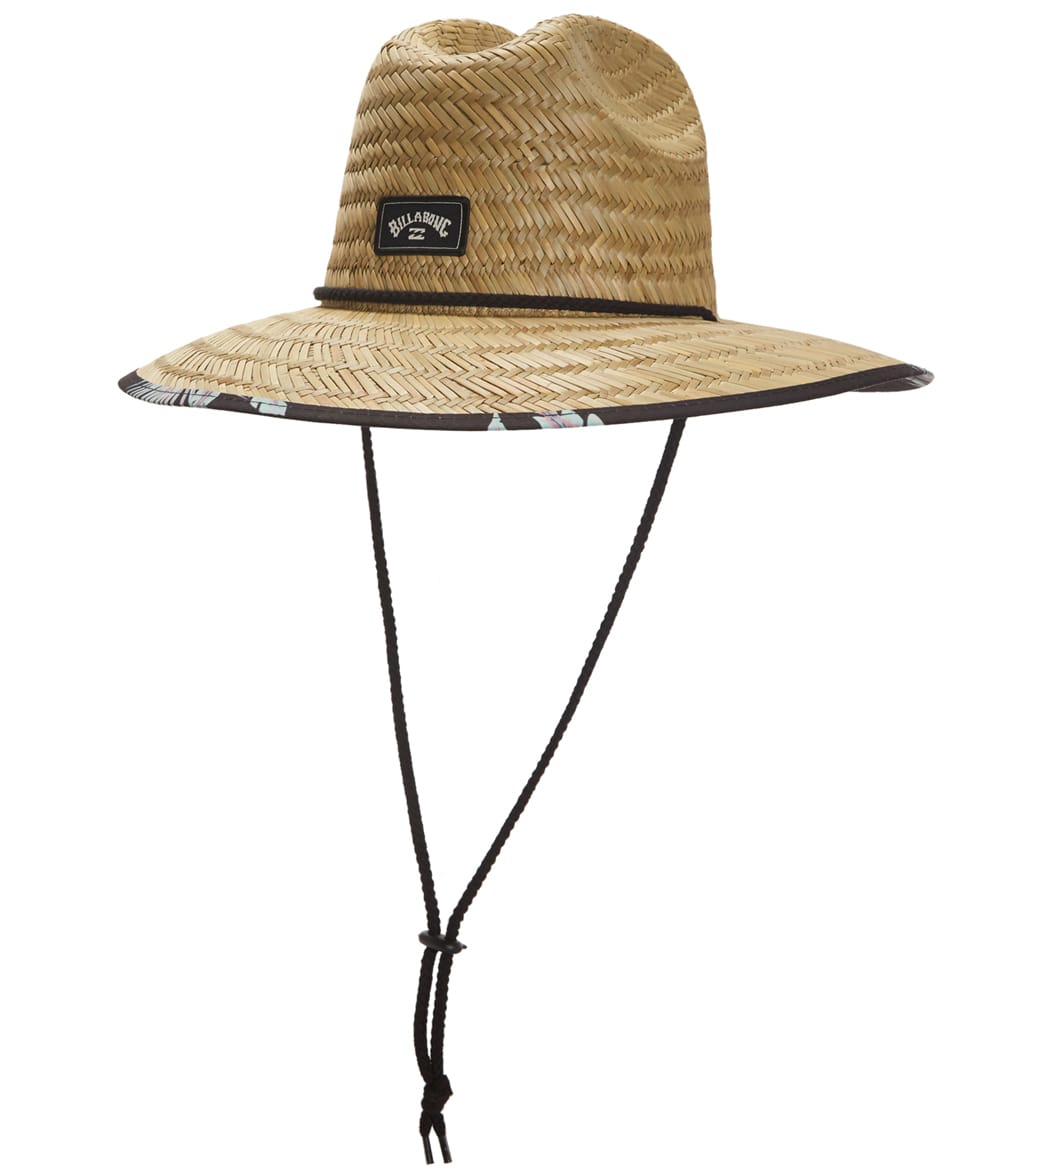 Billabong Men's Tides Print Hat - Black One Size - Swimoutlet.com